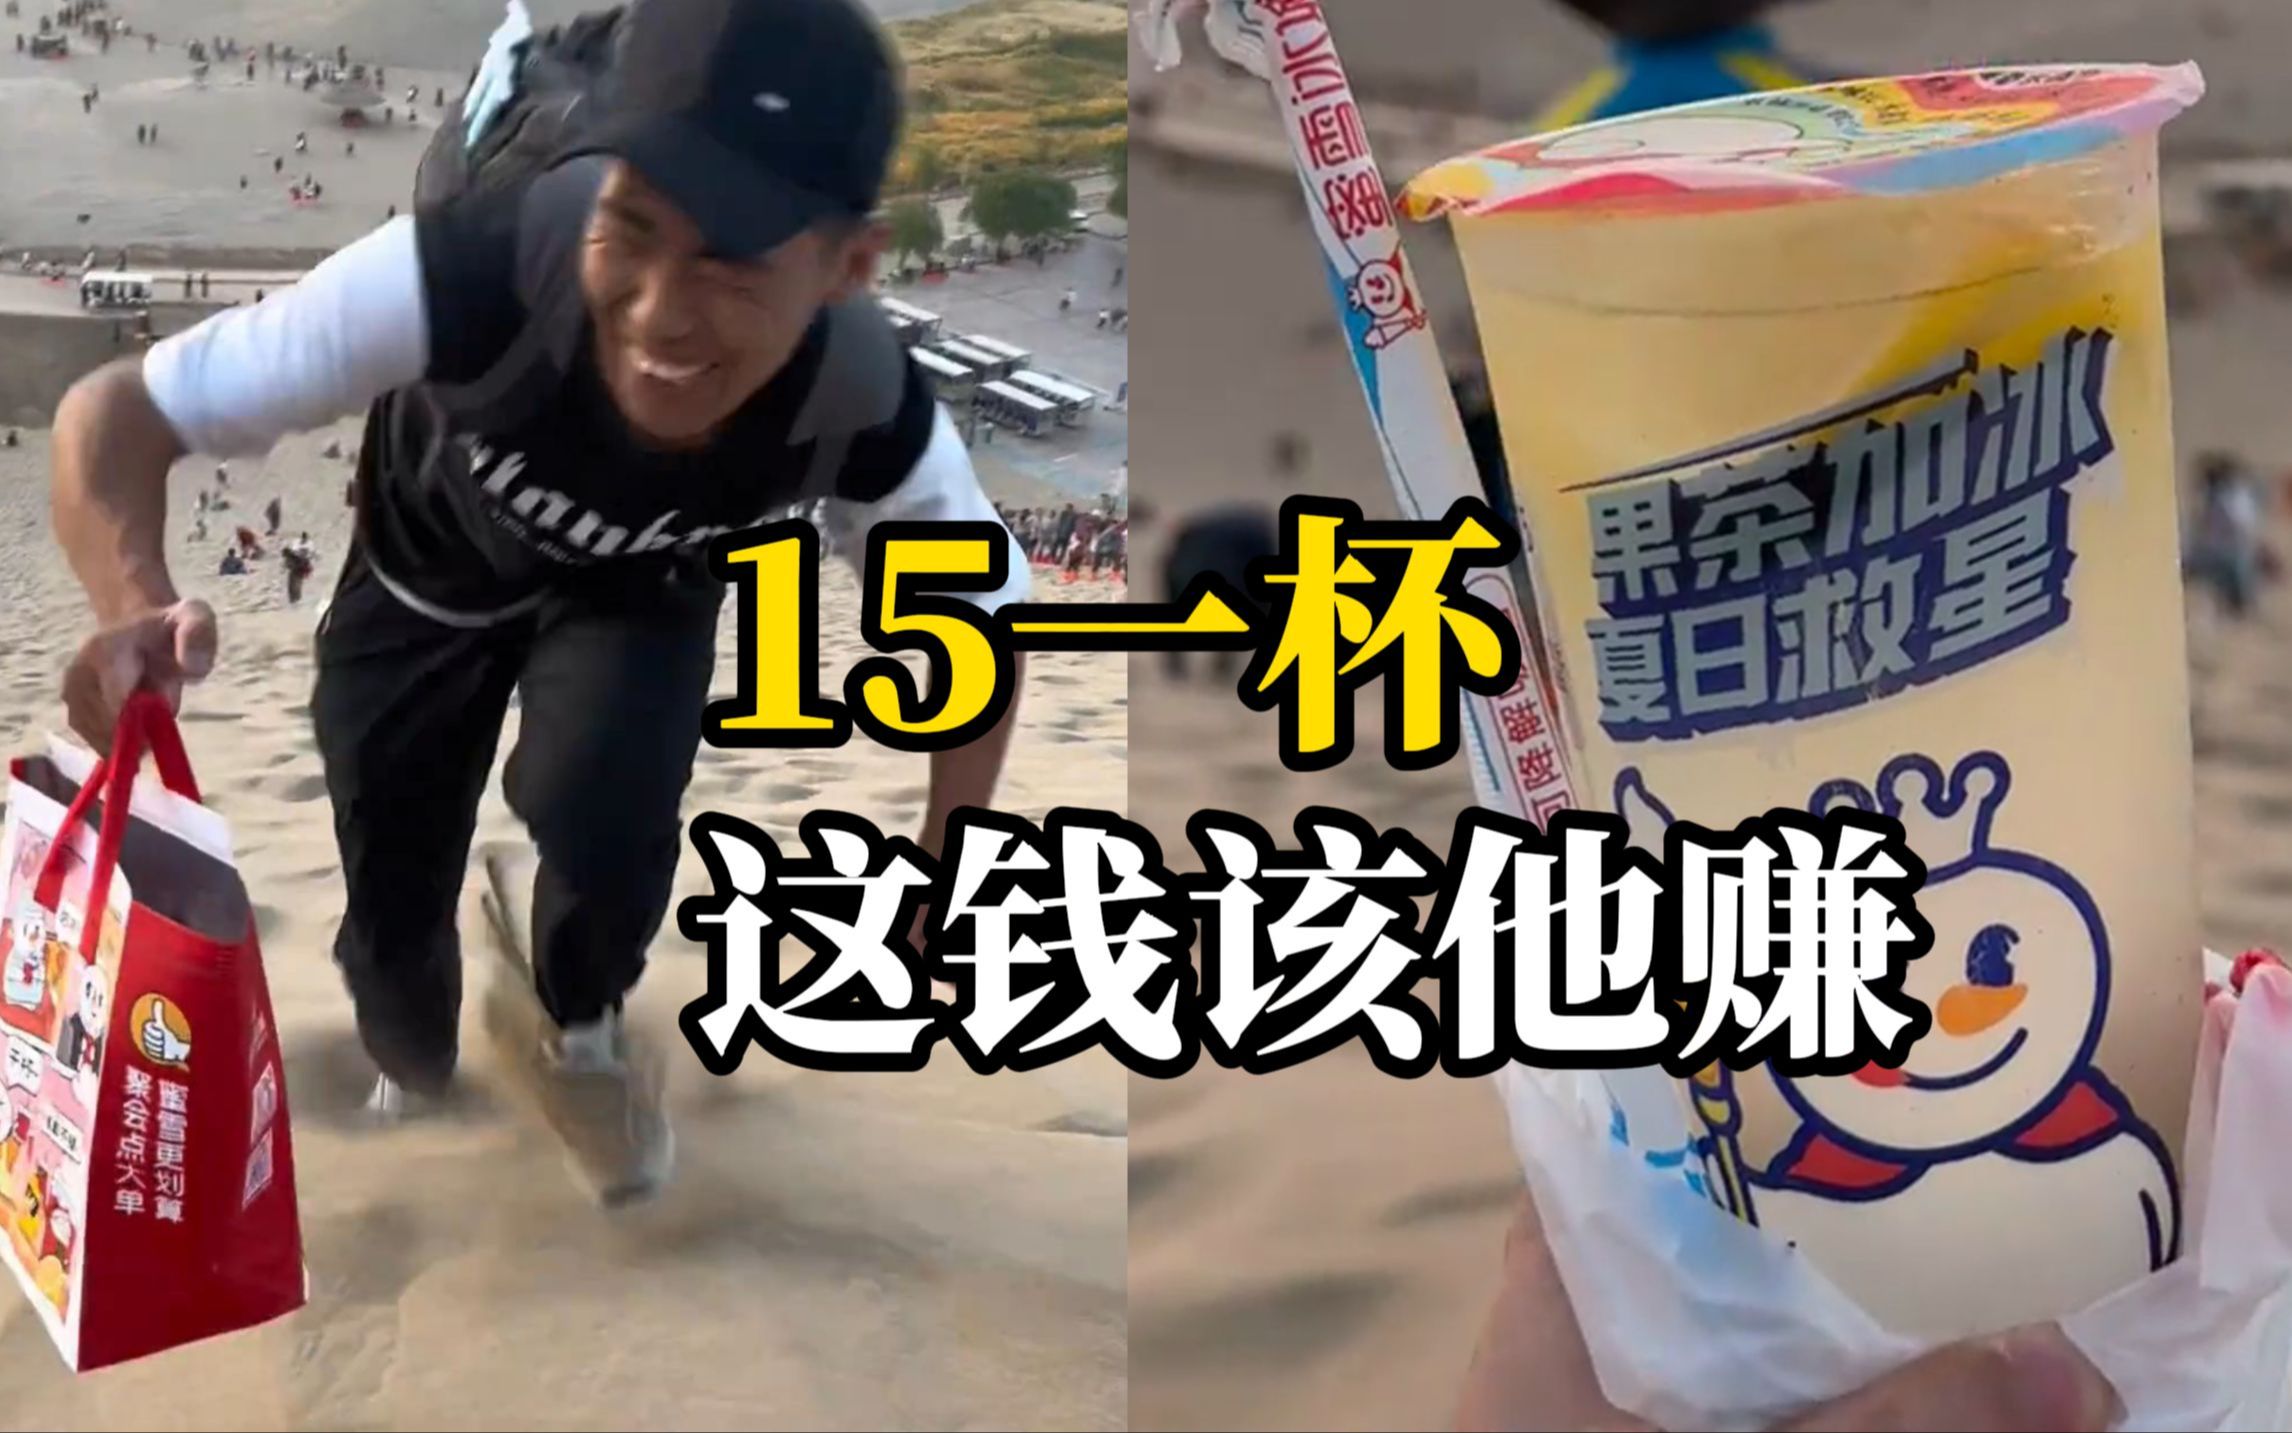 男子背几十杯冰柠檬水和奶茶，爬到鸣沙山上卖。游客表示：15元一杯有些钱就应该人家挣